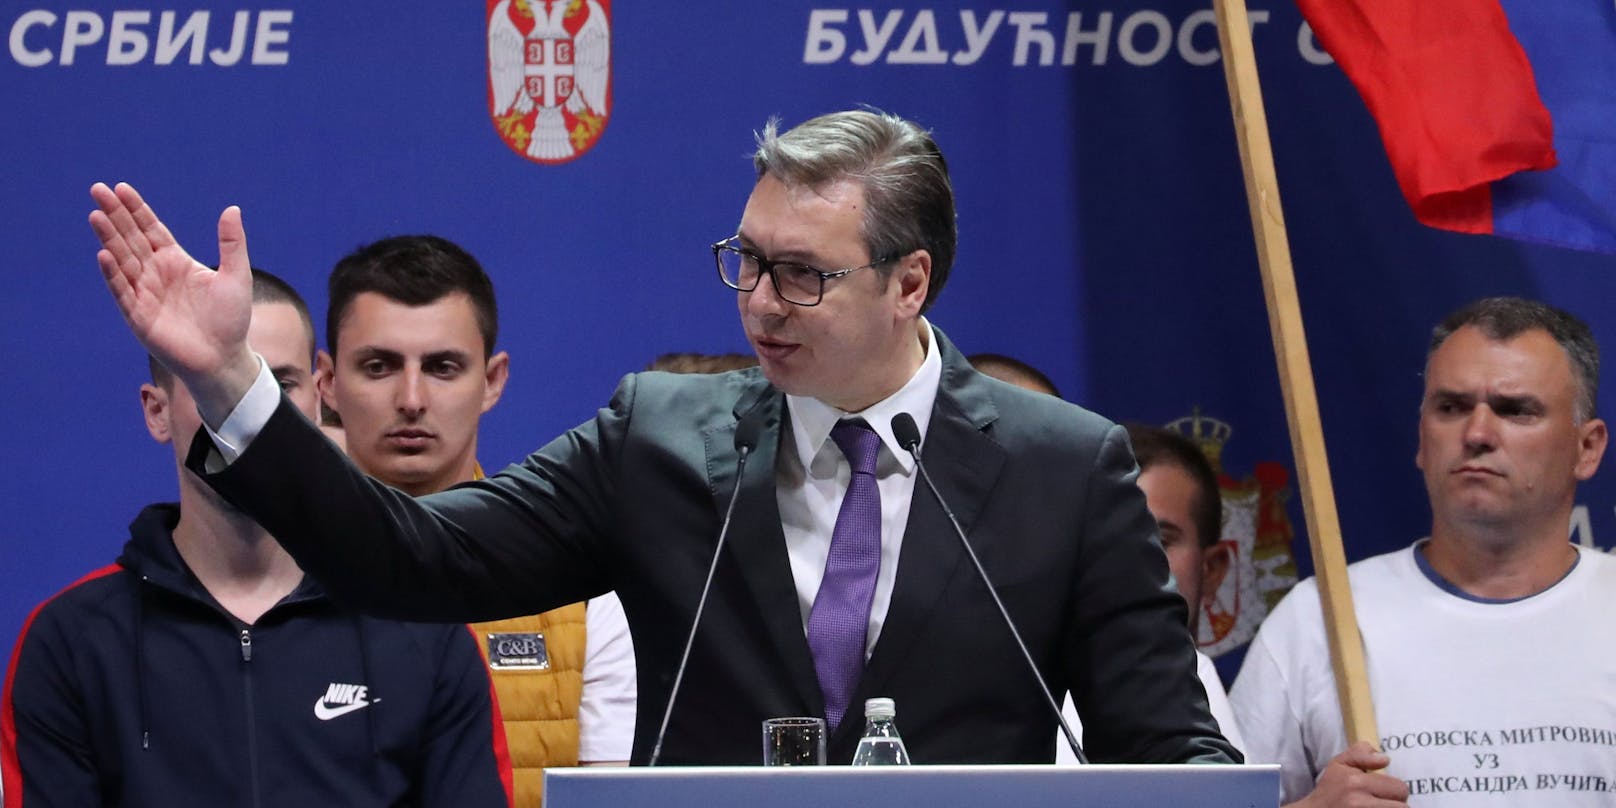 Aleksandar Vučić nannte neue Details zu den Taten.